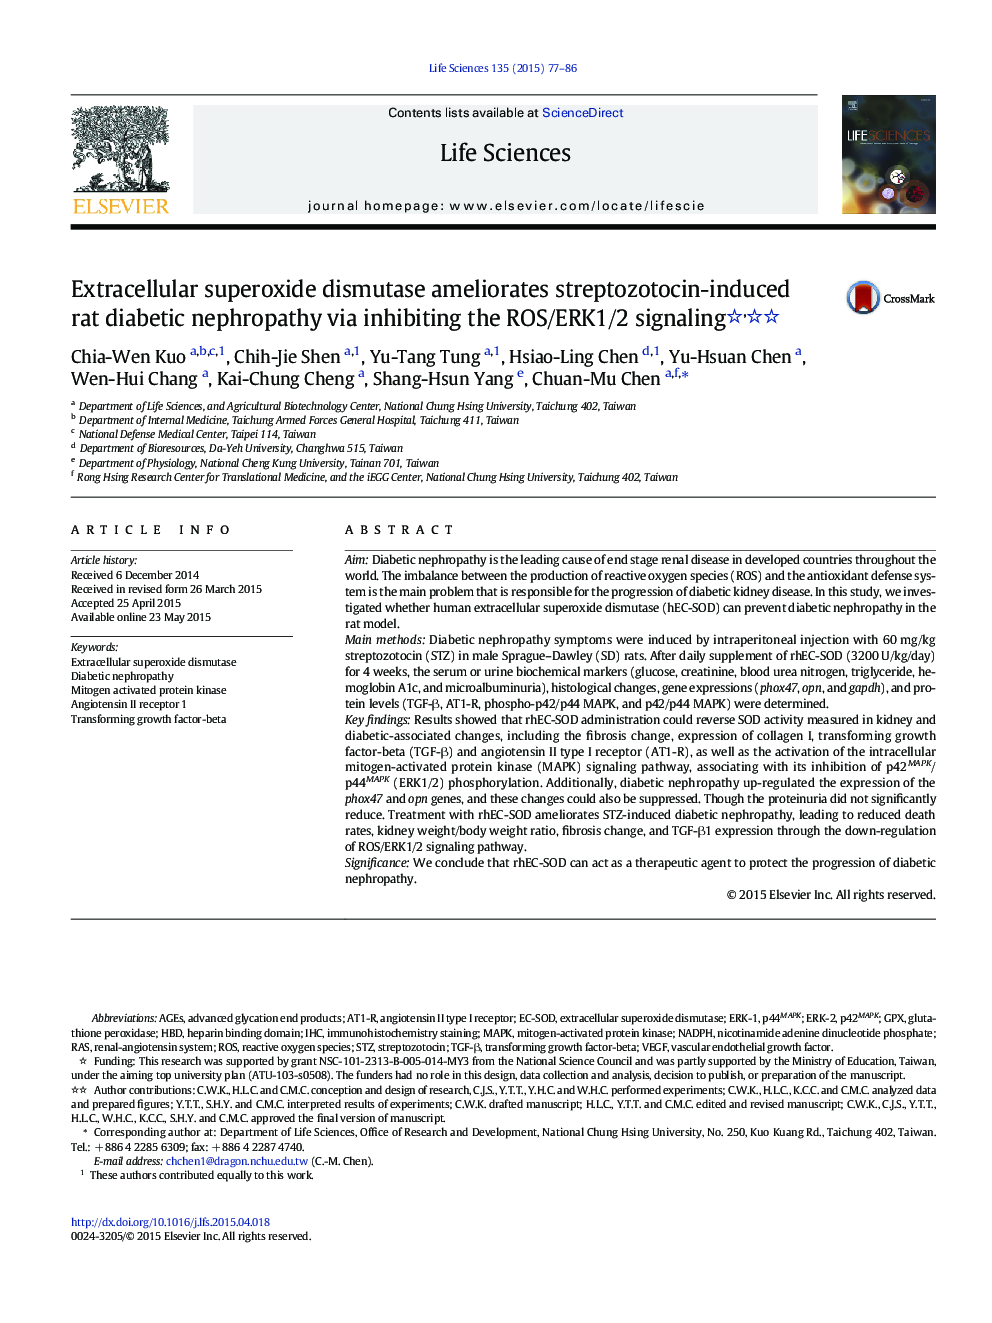 Extracellular superoxide dismutase ameliorates streptozotocin-induced rat diabetic nephropathy via inhibiting the ROS/ERK1/2 signaling 